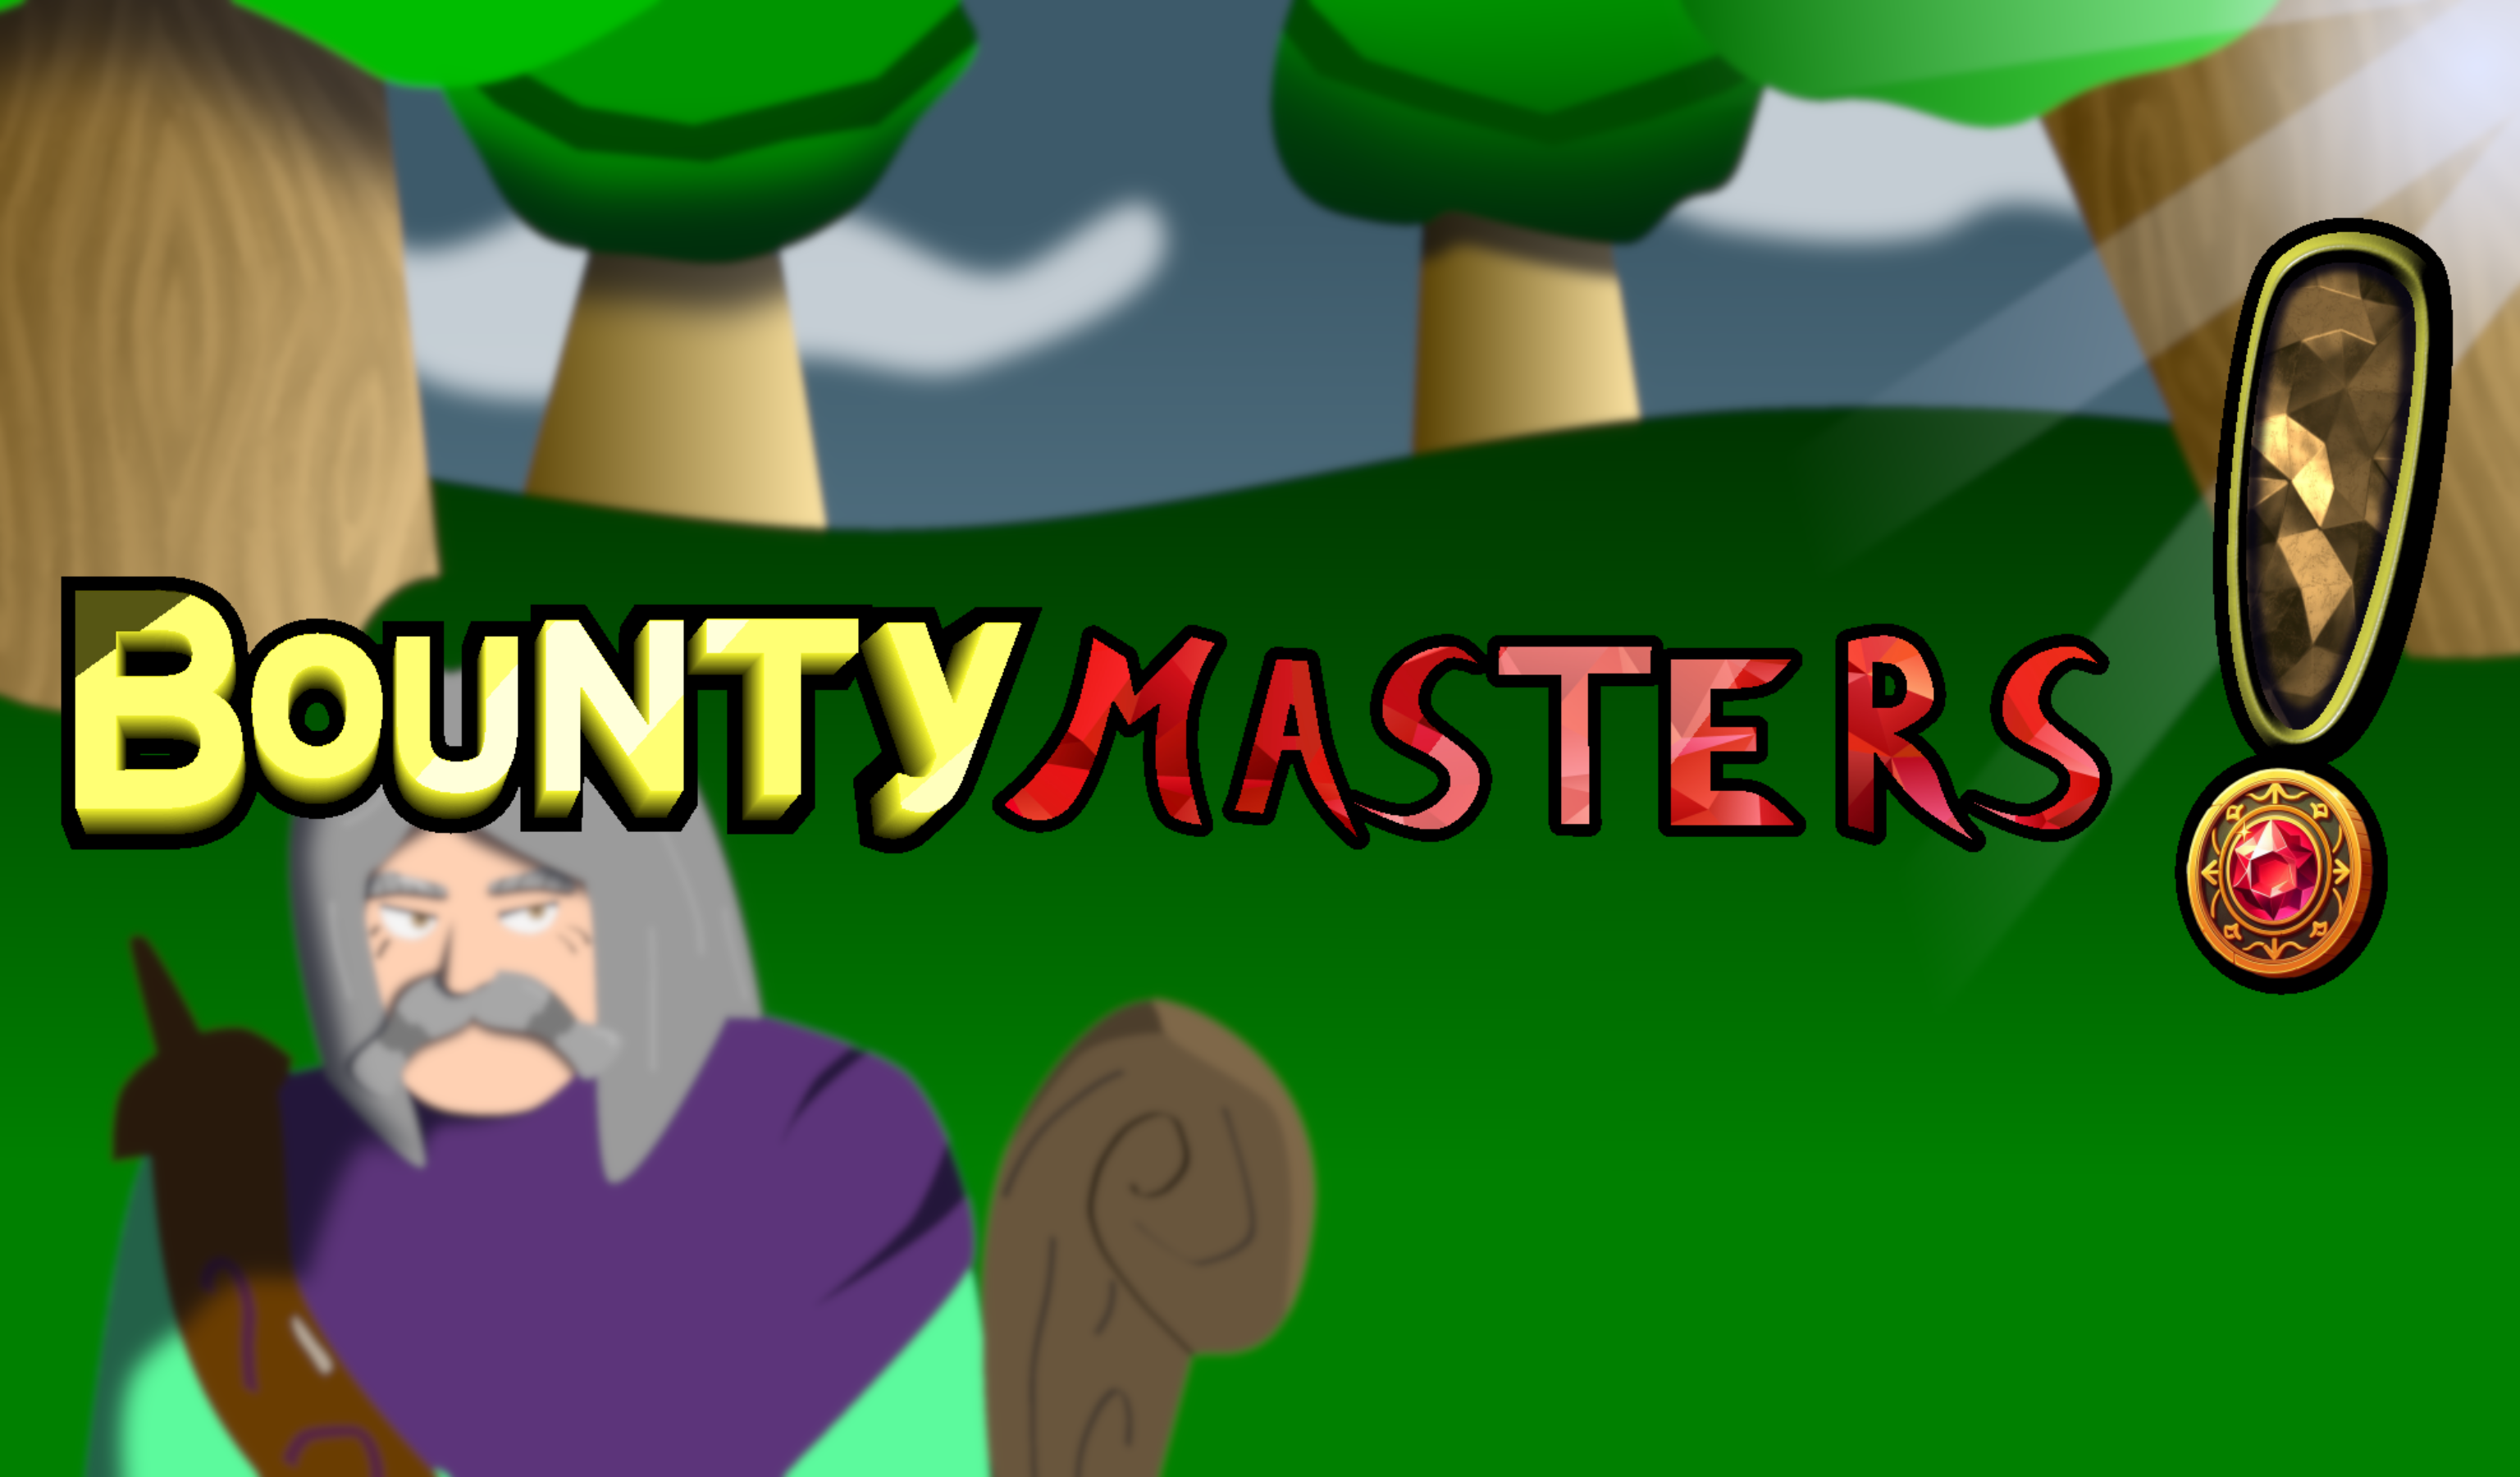 Bounty Masters!